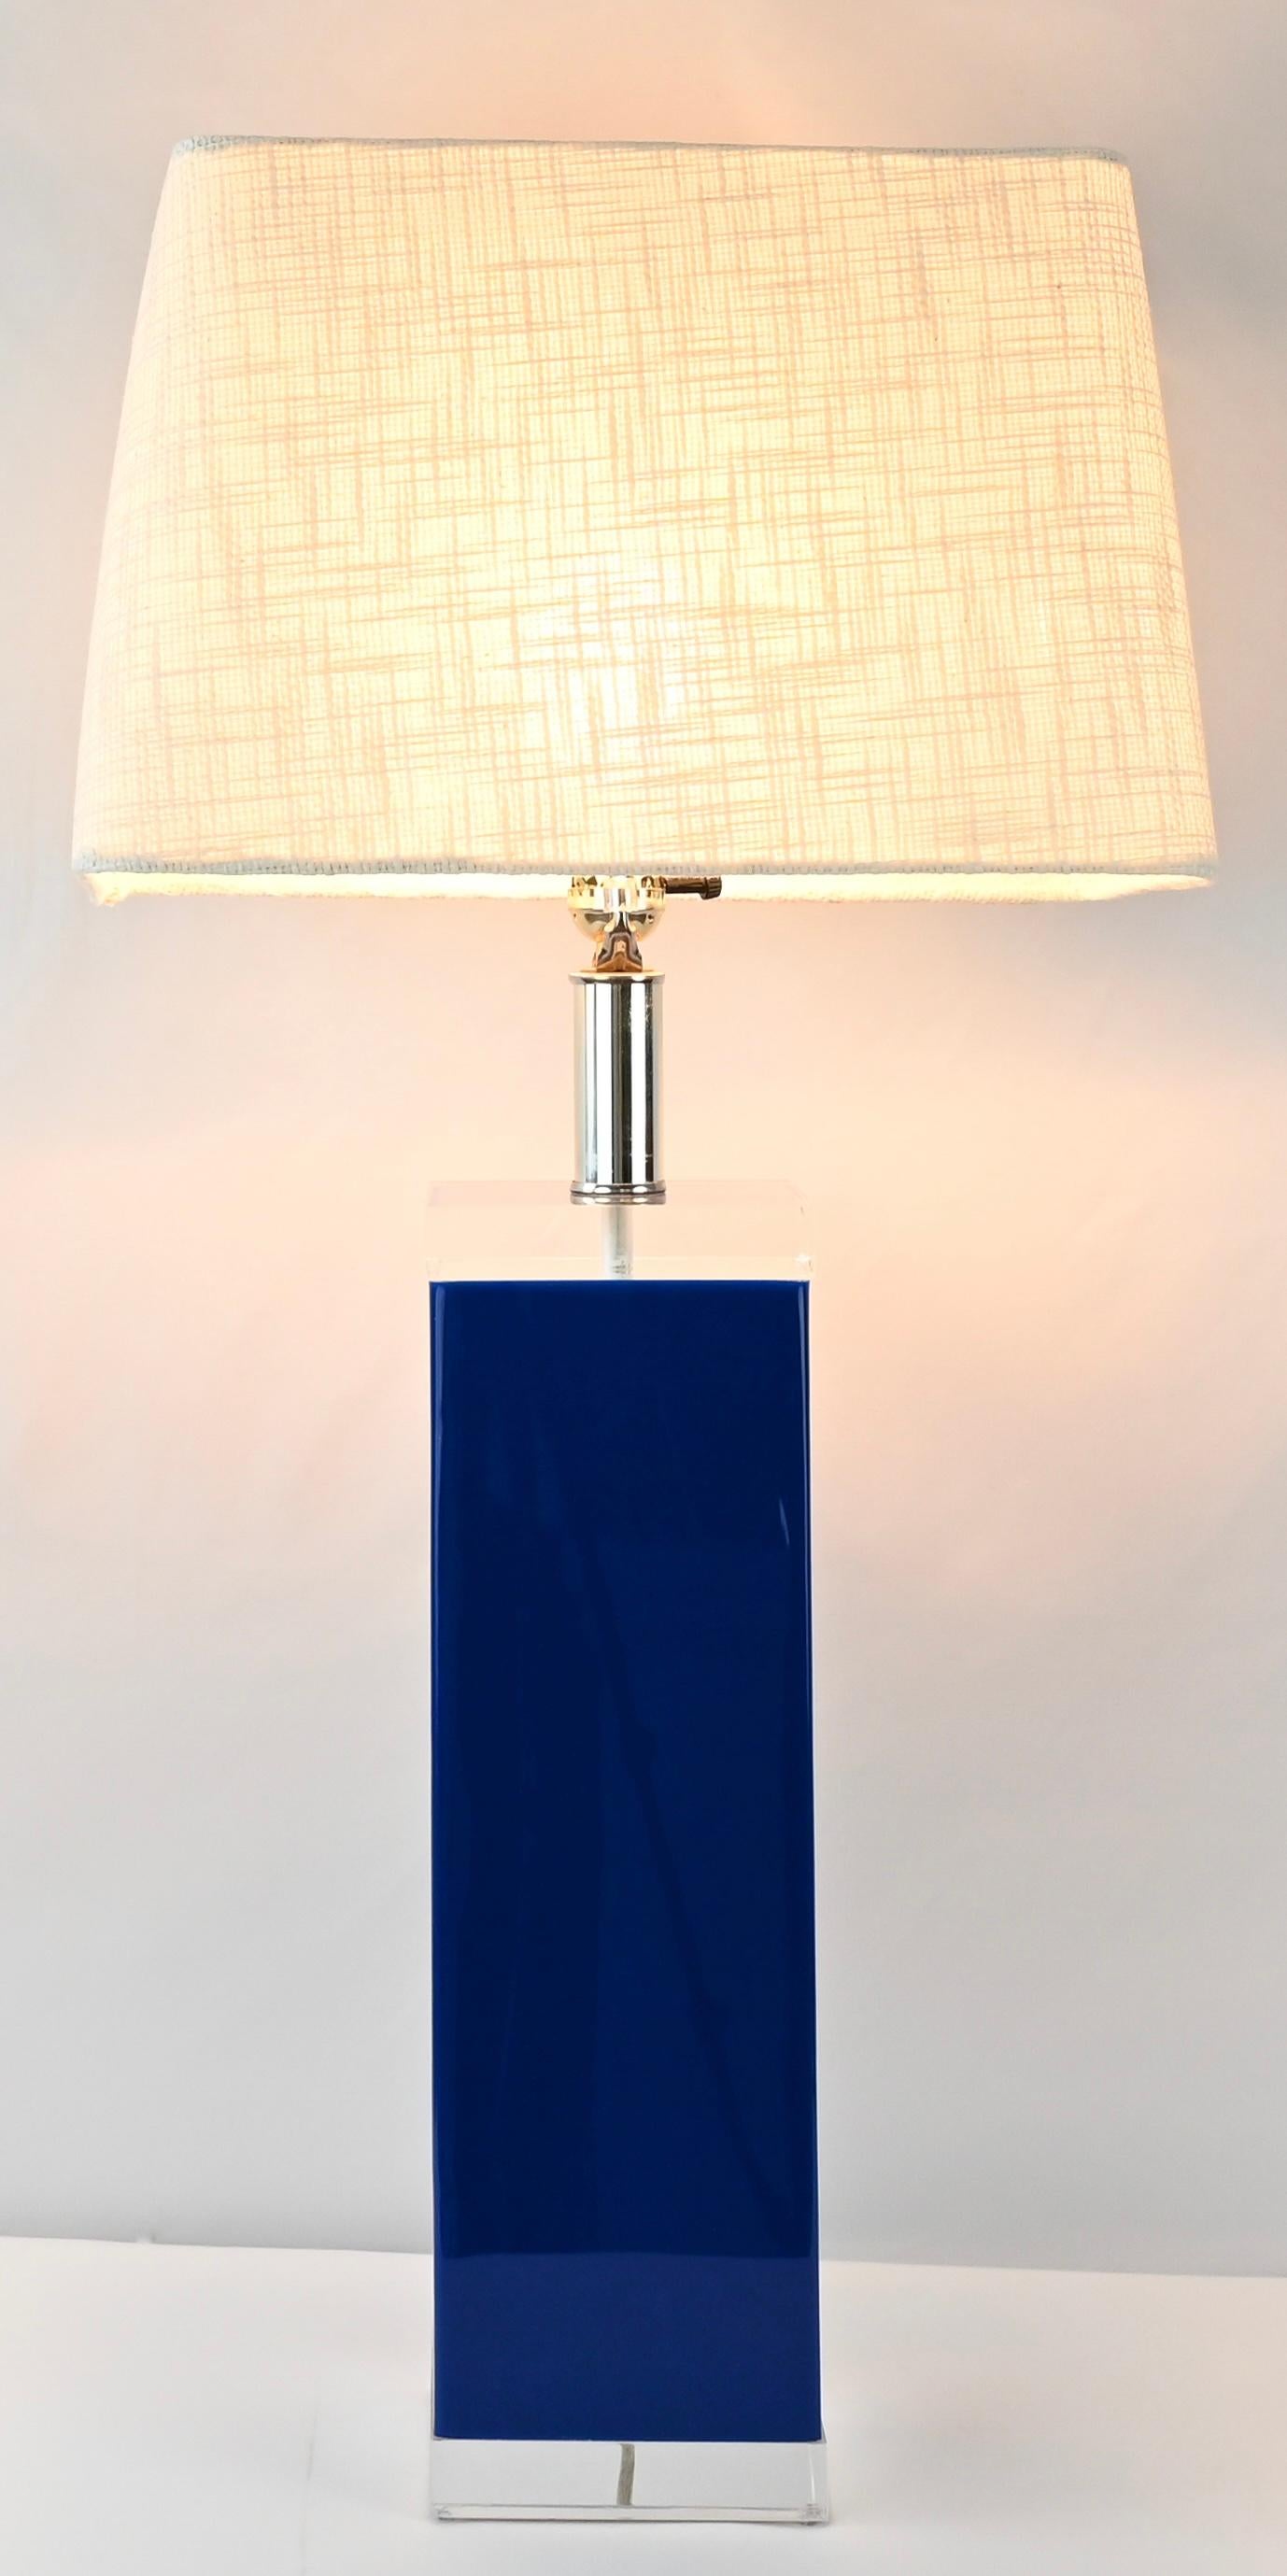 Ein sehr hochwertiges Paar George Bullio Tischlampen aus Lucit, entworfen und gefertigt mit großartigen Details. Sehr gefälliger blauer Lucitrahmen oben und unten mit kristallklaren Lucitblöcken. Verchromter Ständer zur Aufnahme der Glühbirne und